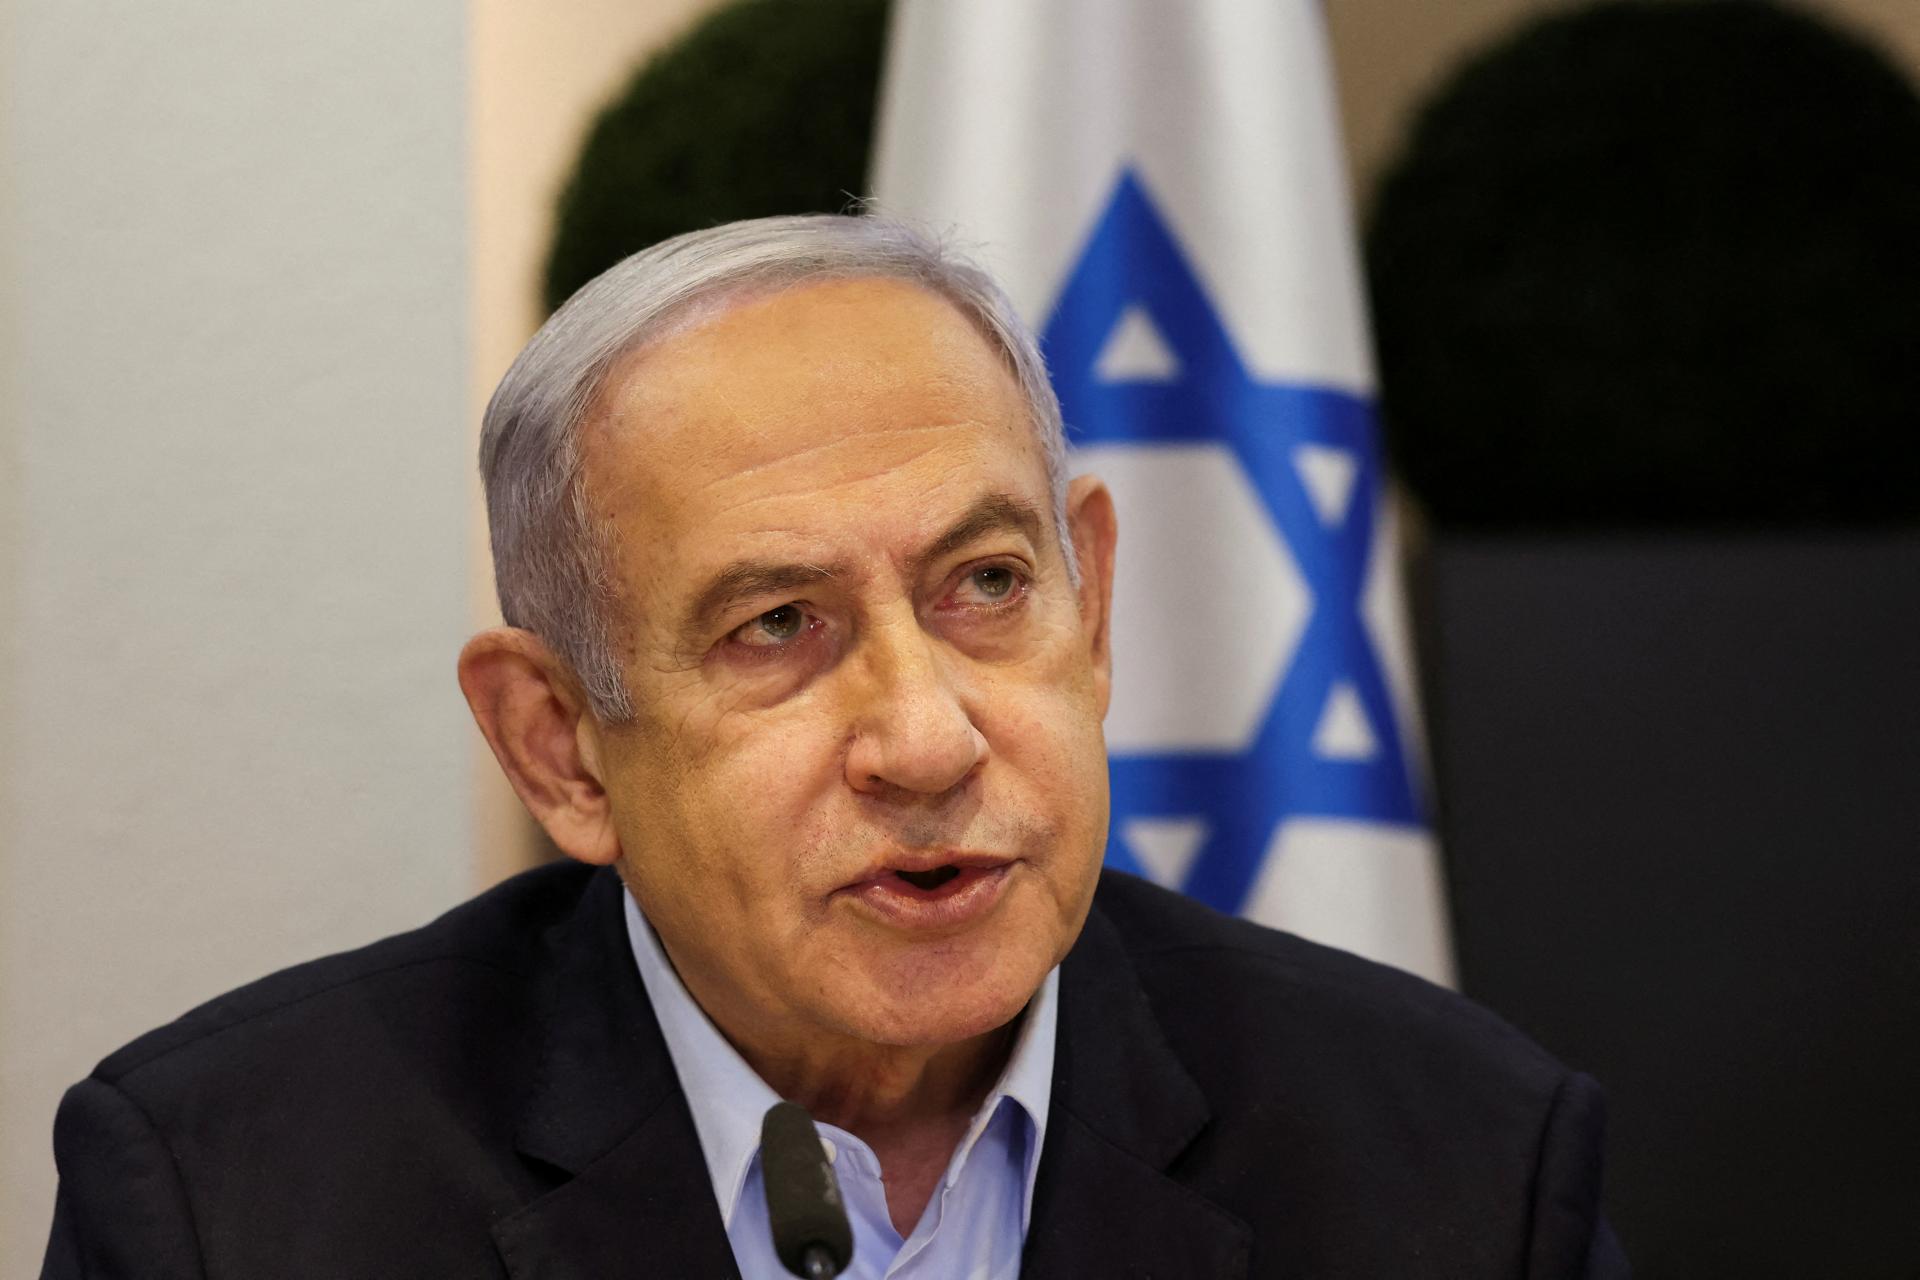 Izrael sa pripravuje na konflikt aj v iných oblastiach ako v Pásme Gazy, vyhlásil Netanjahu